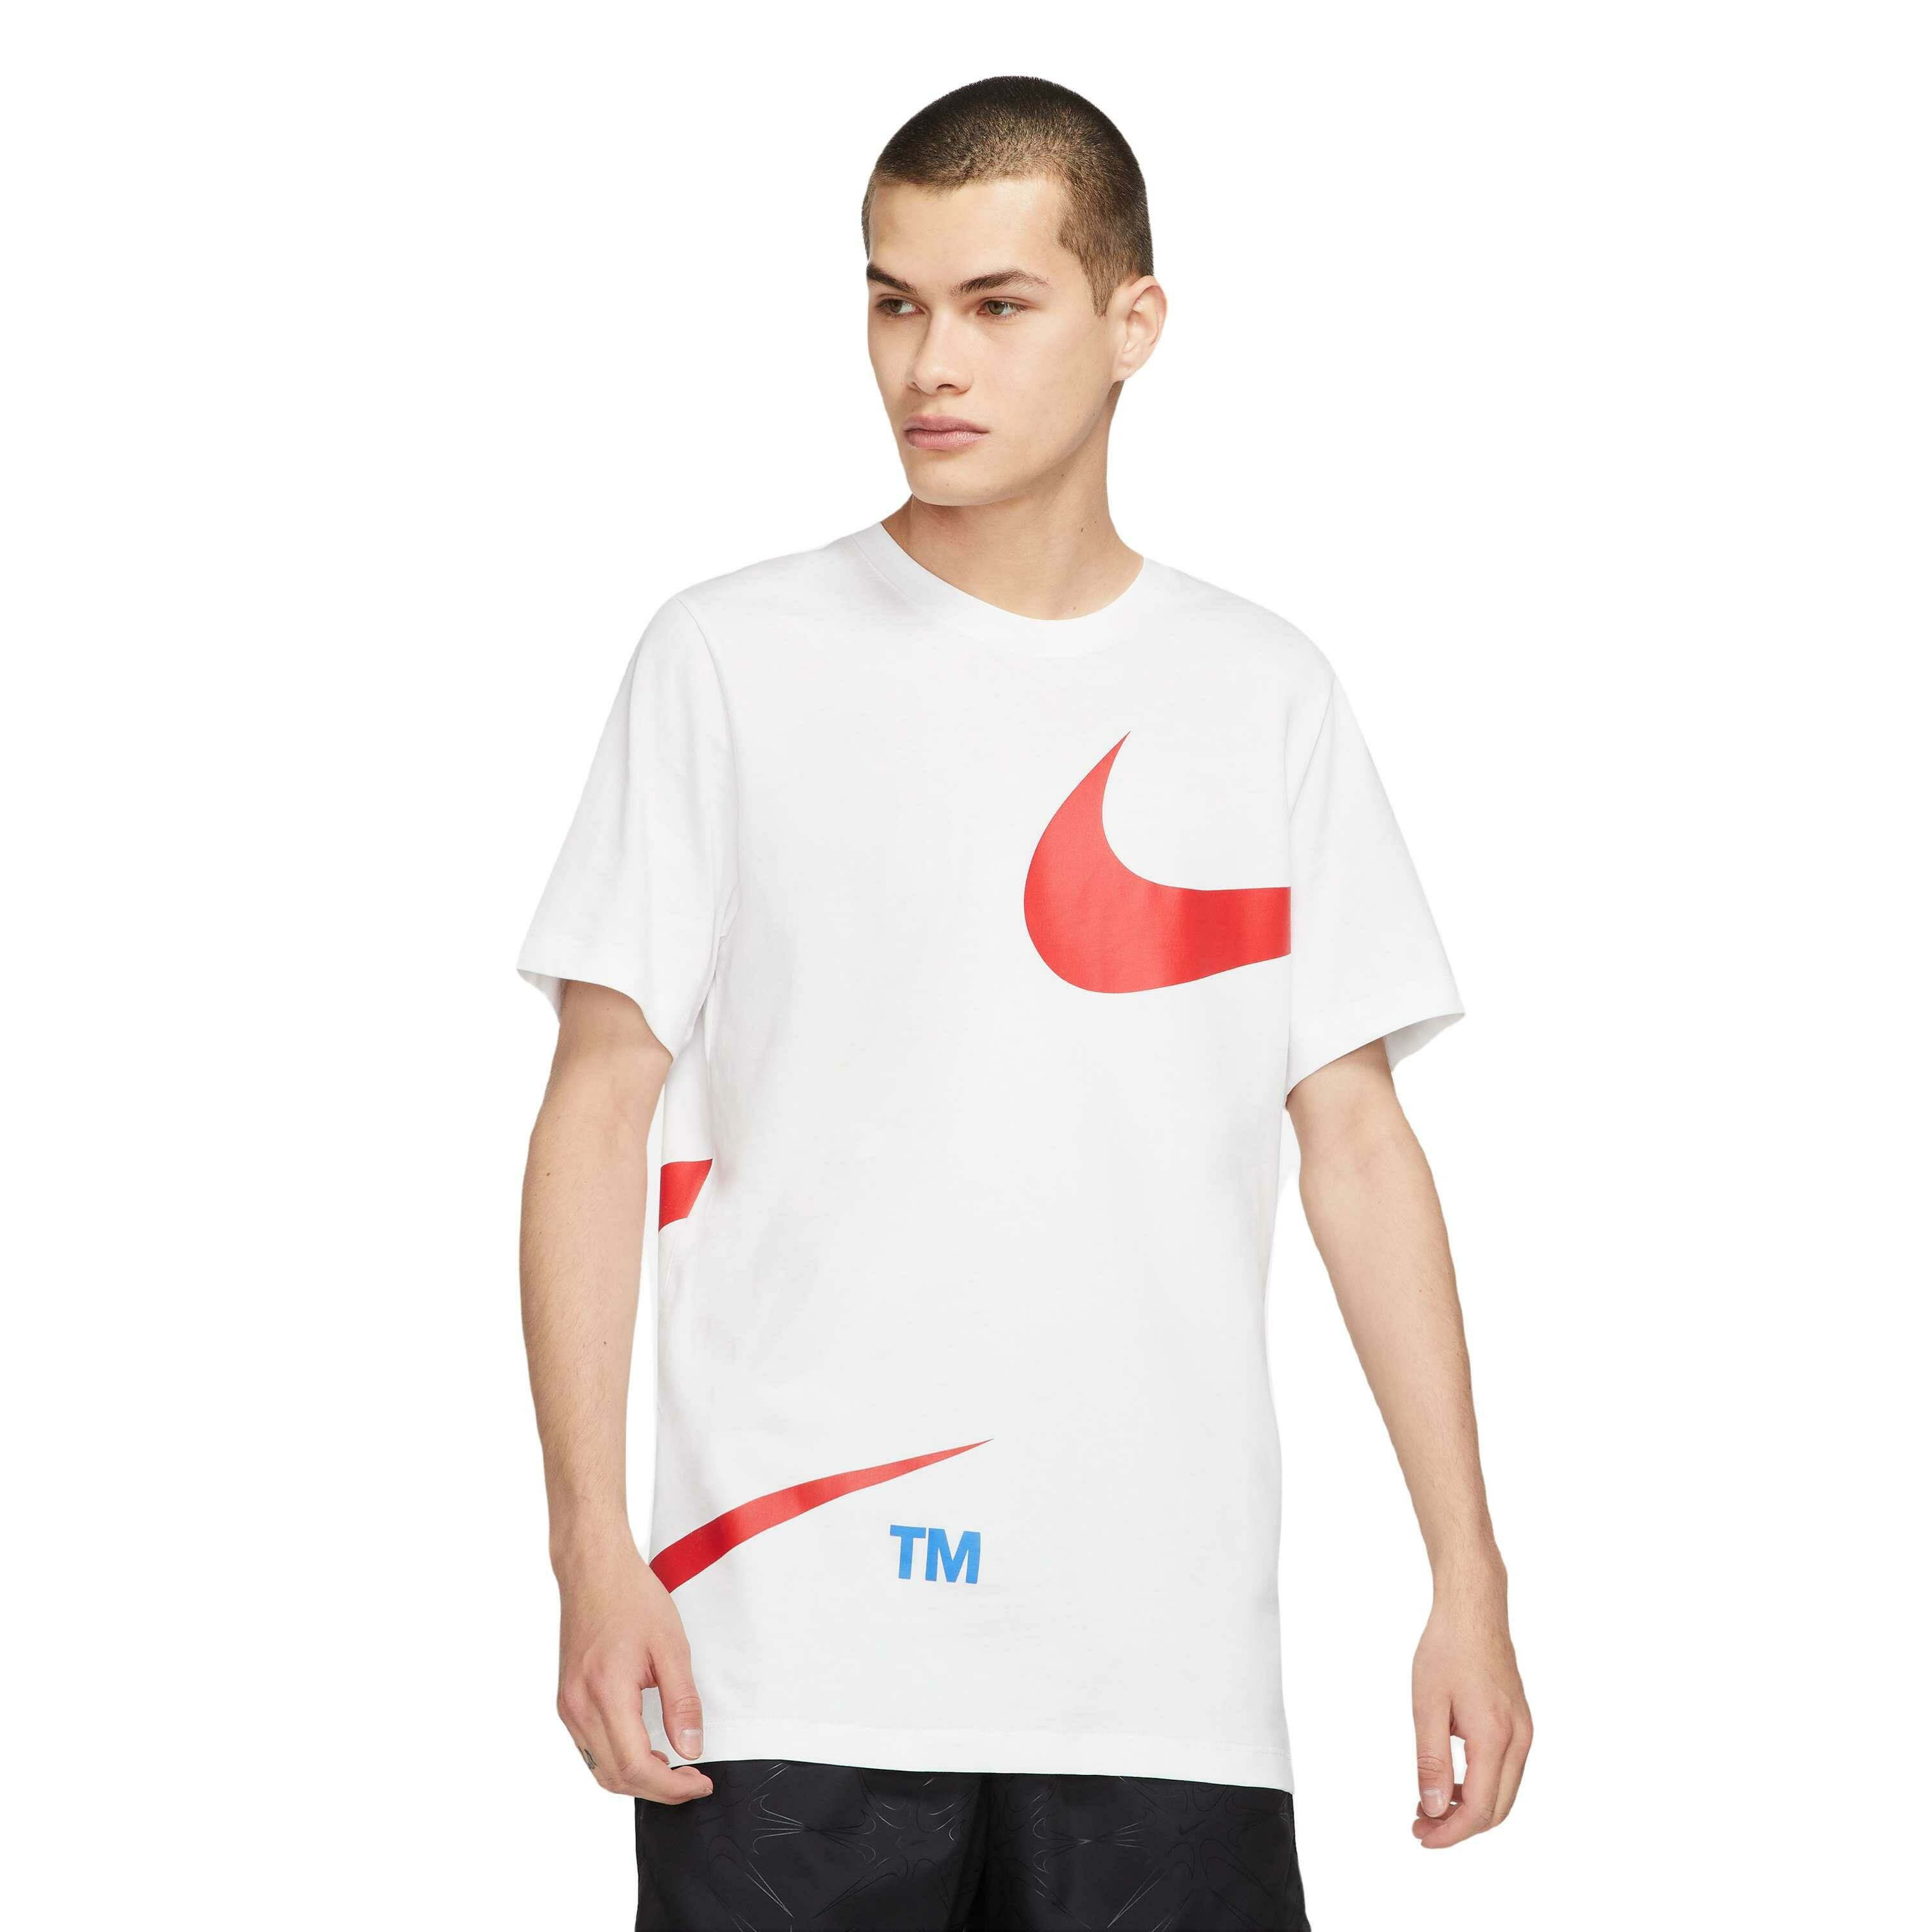 ongebruikt film Wiskunde Nike Sportswear shirt heren white